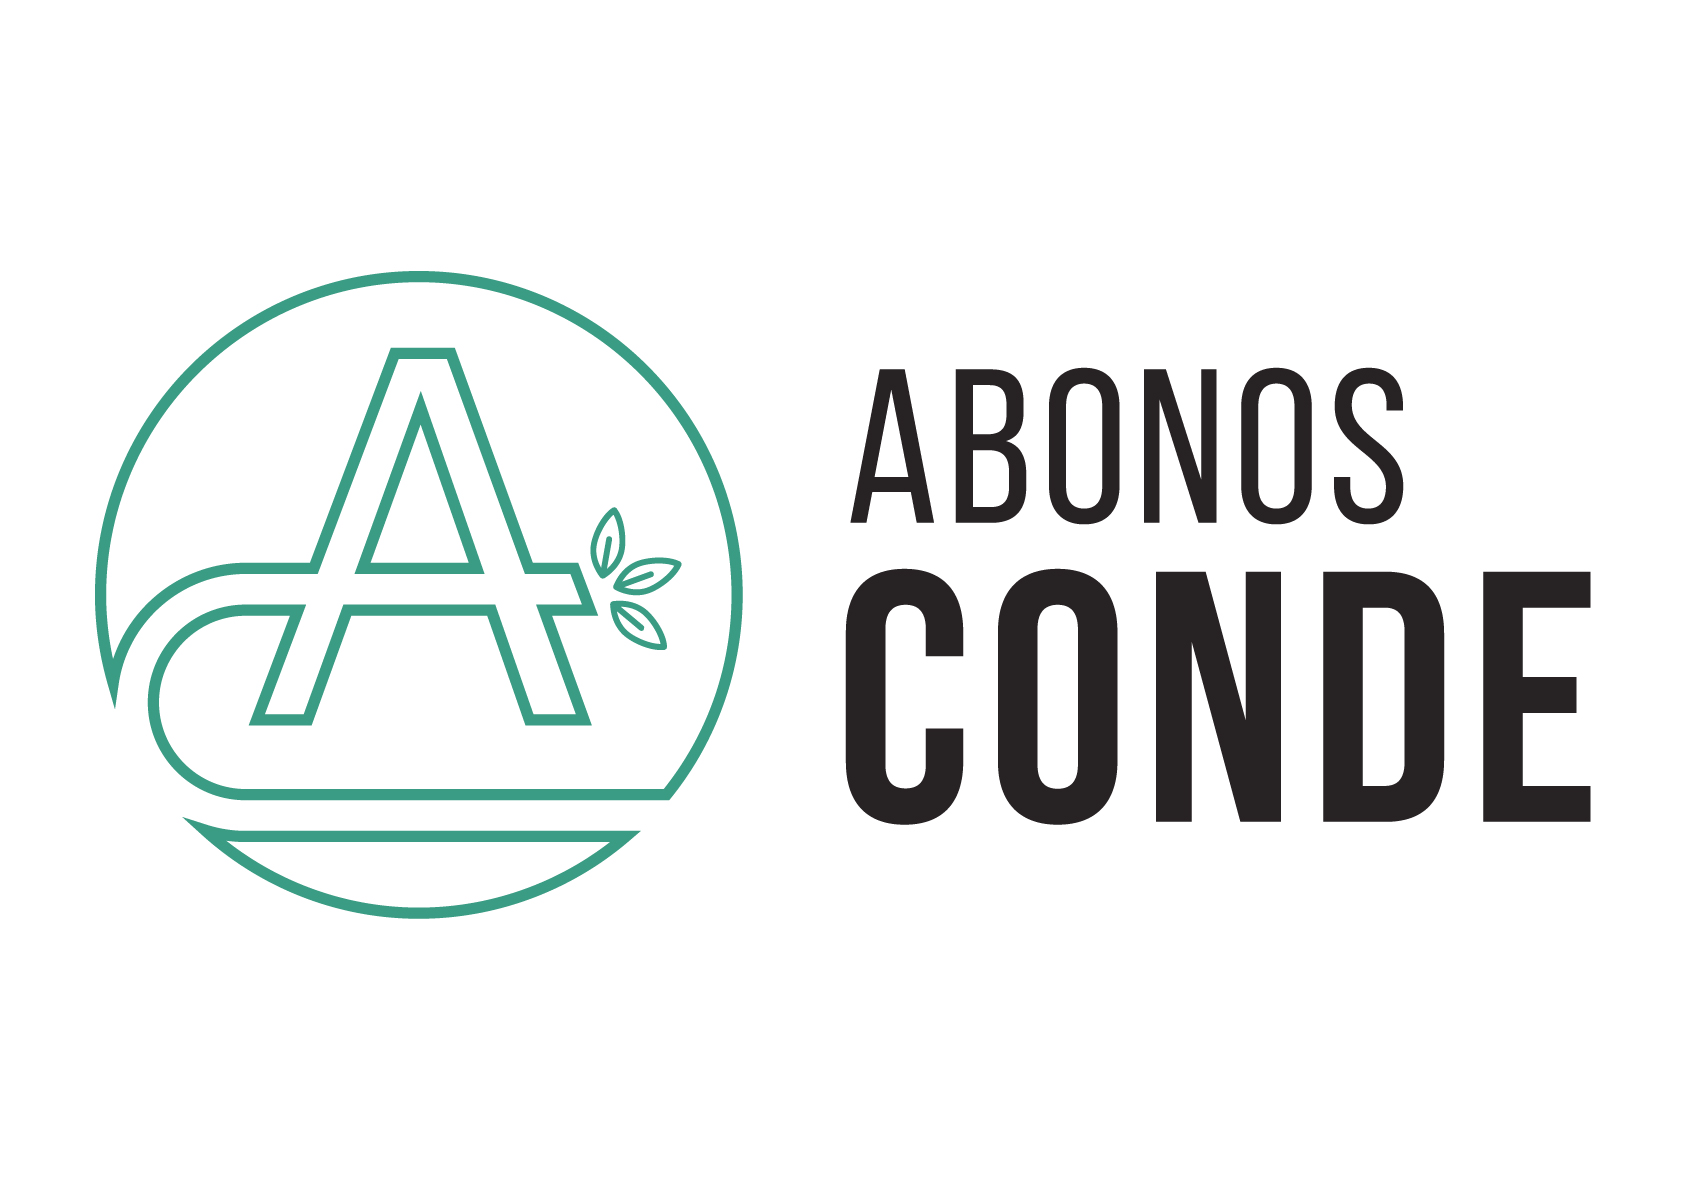 ABONOS CONDE